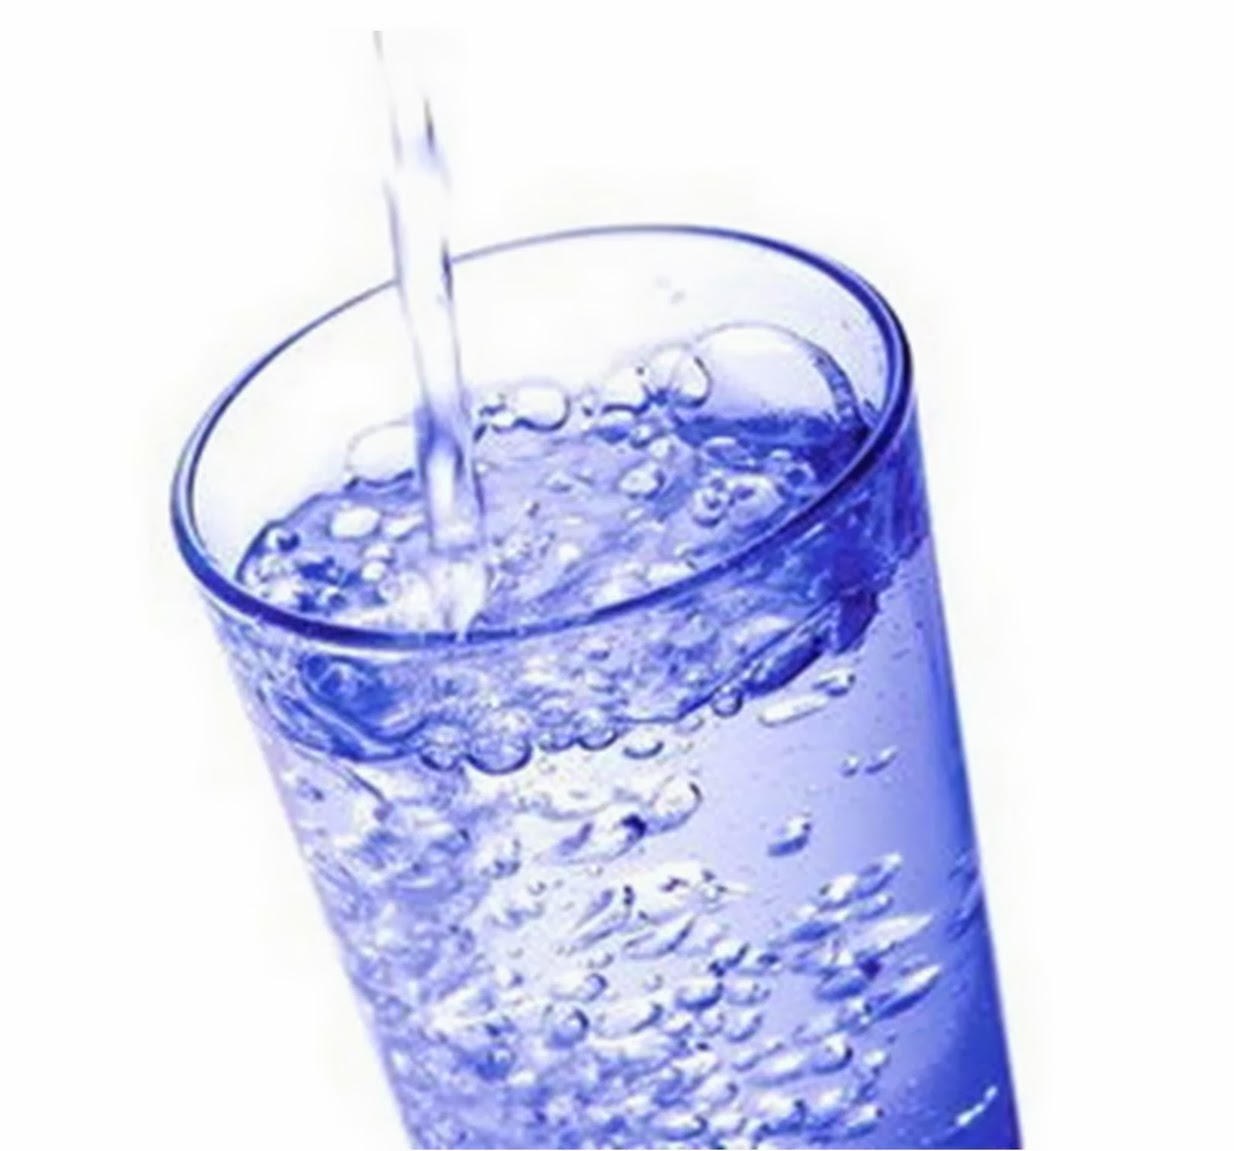  Manfaat Air  Putih yang Sederhana dan Sangat Berguna untuk 